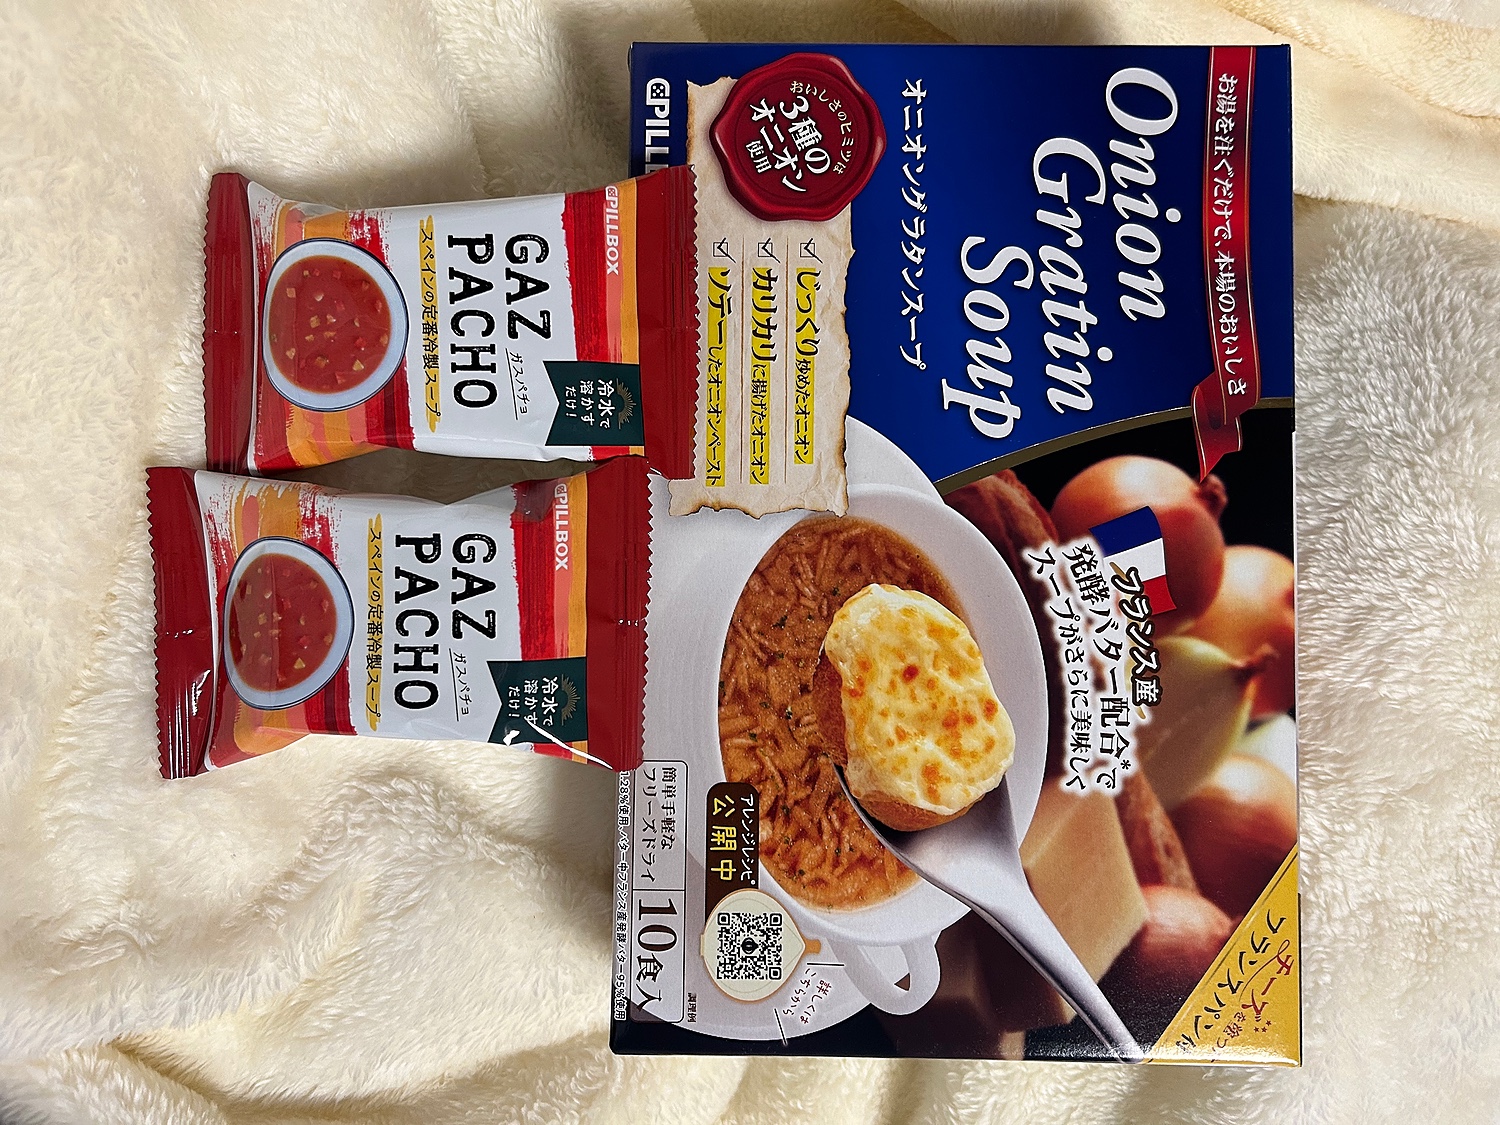 公式 オニオングラタンスープ 10食セット ピルボックス PILLBOX フリーズドライ コストコ人気商品 箱無し (10食)